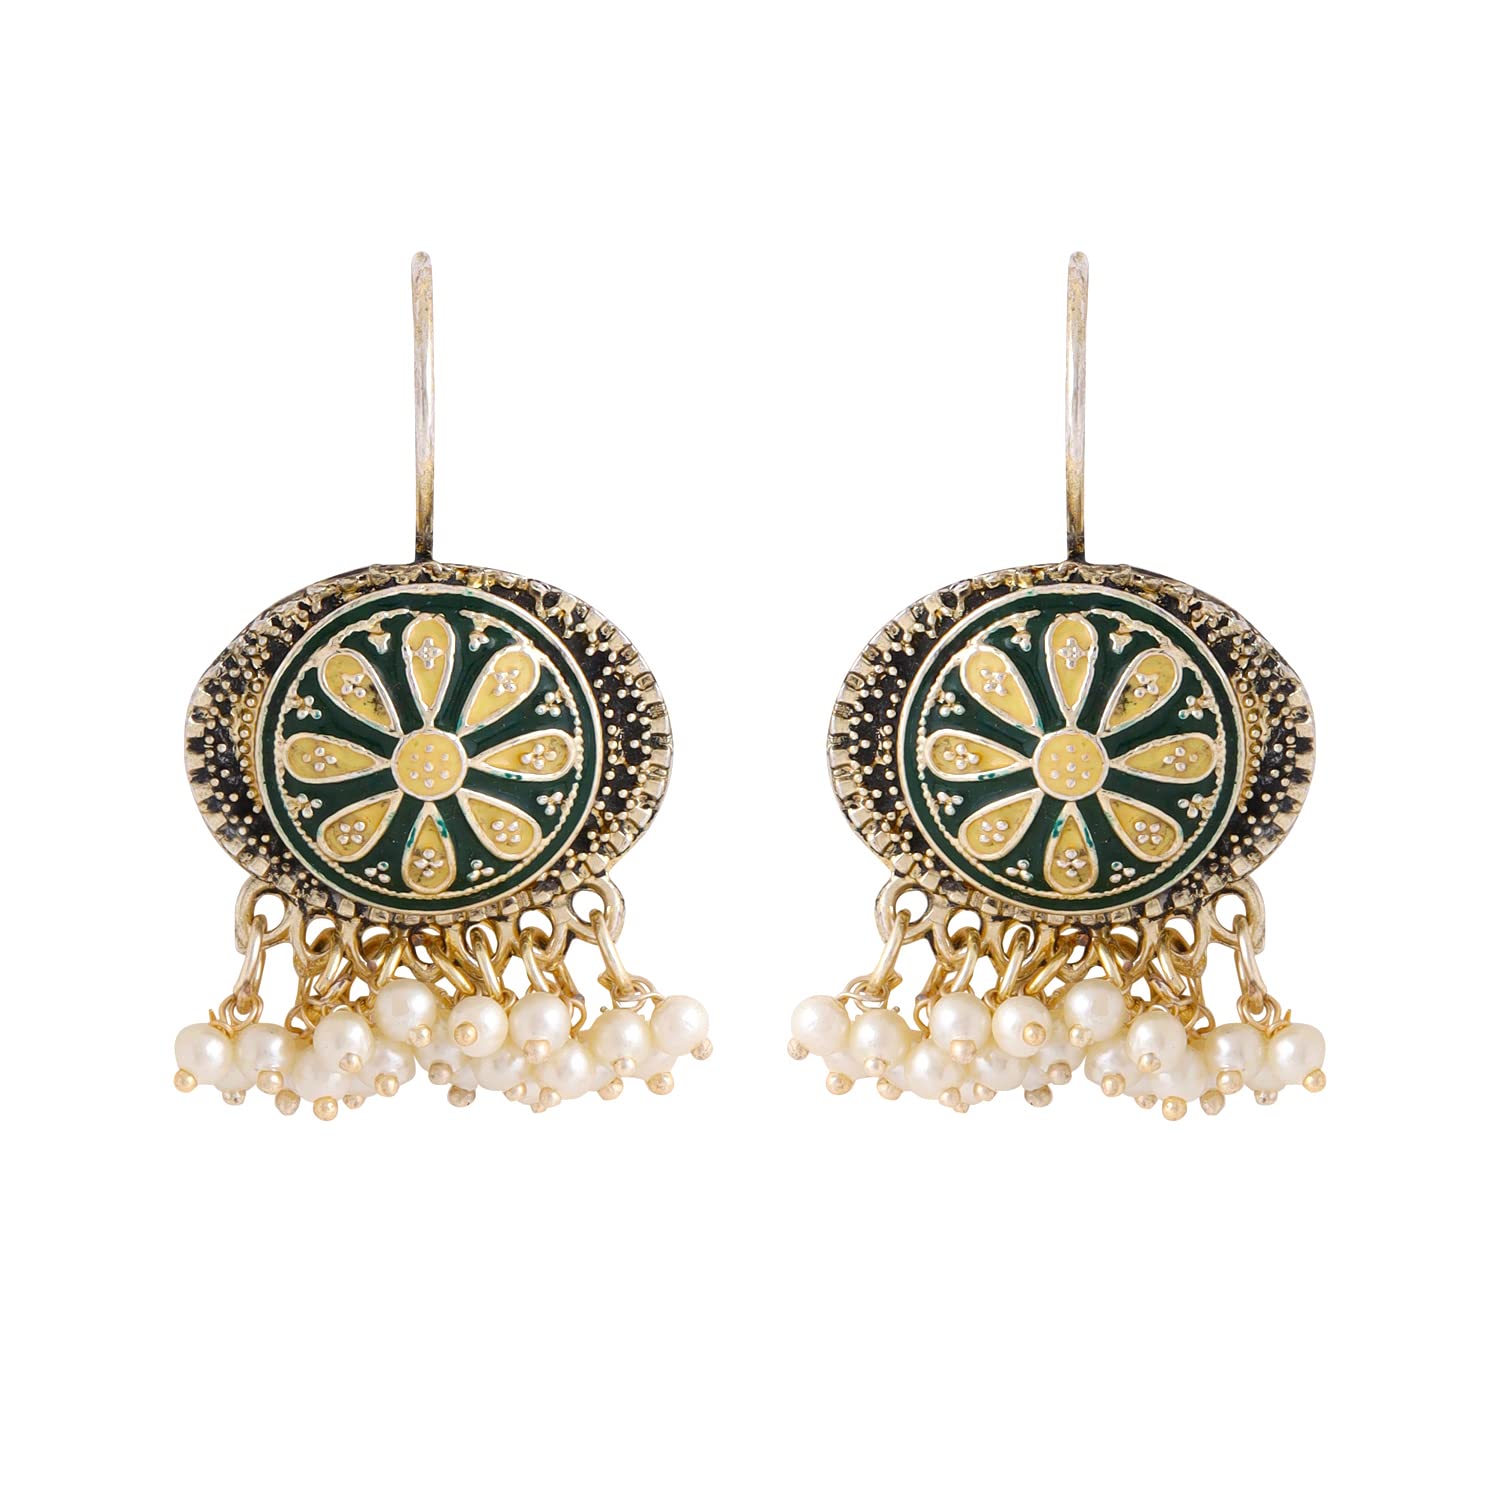 Yellow Chimes Earrings for Women and Girls Meenakari Chandbali | Gold Plated Green Meenakari Chandbali Earrings | Birthday Gift for girls and women Anniversary Gift for Wife